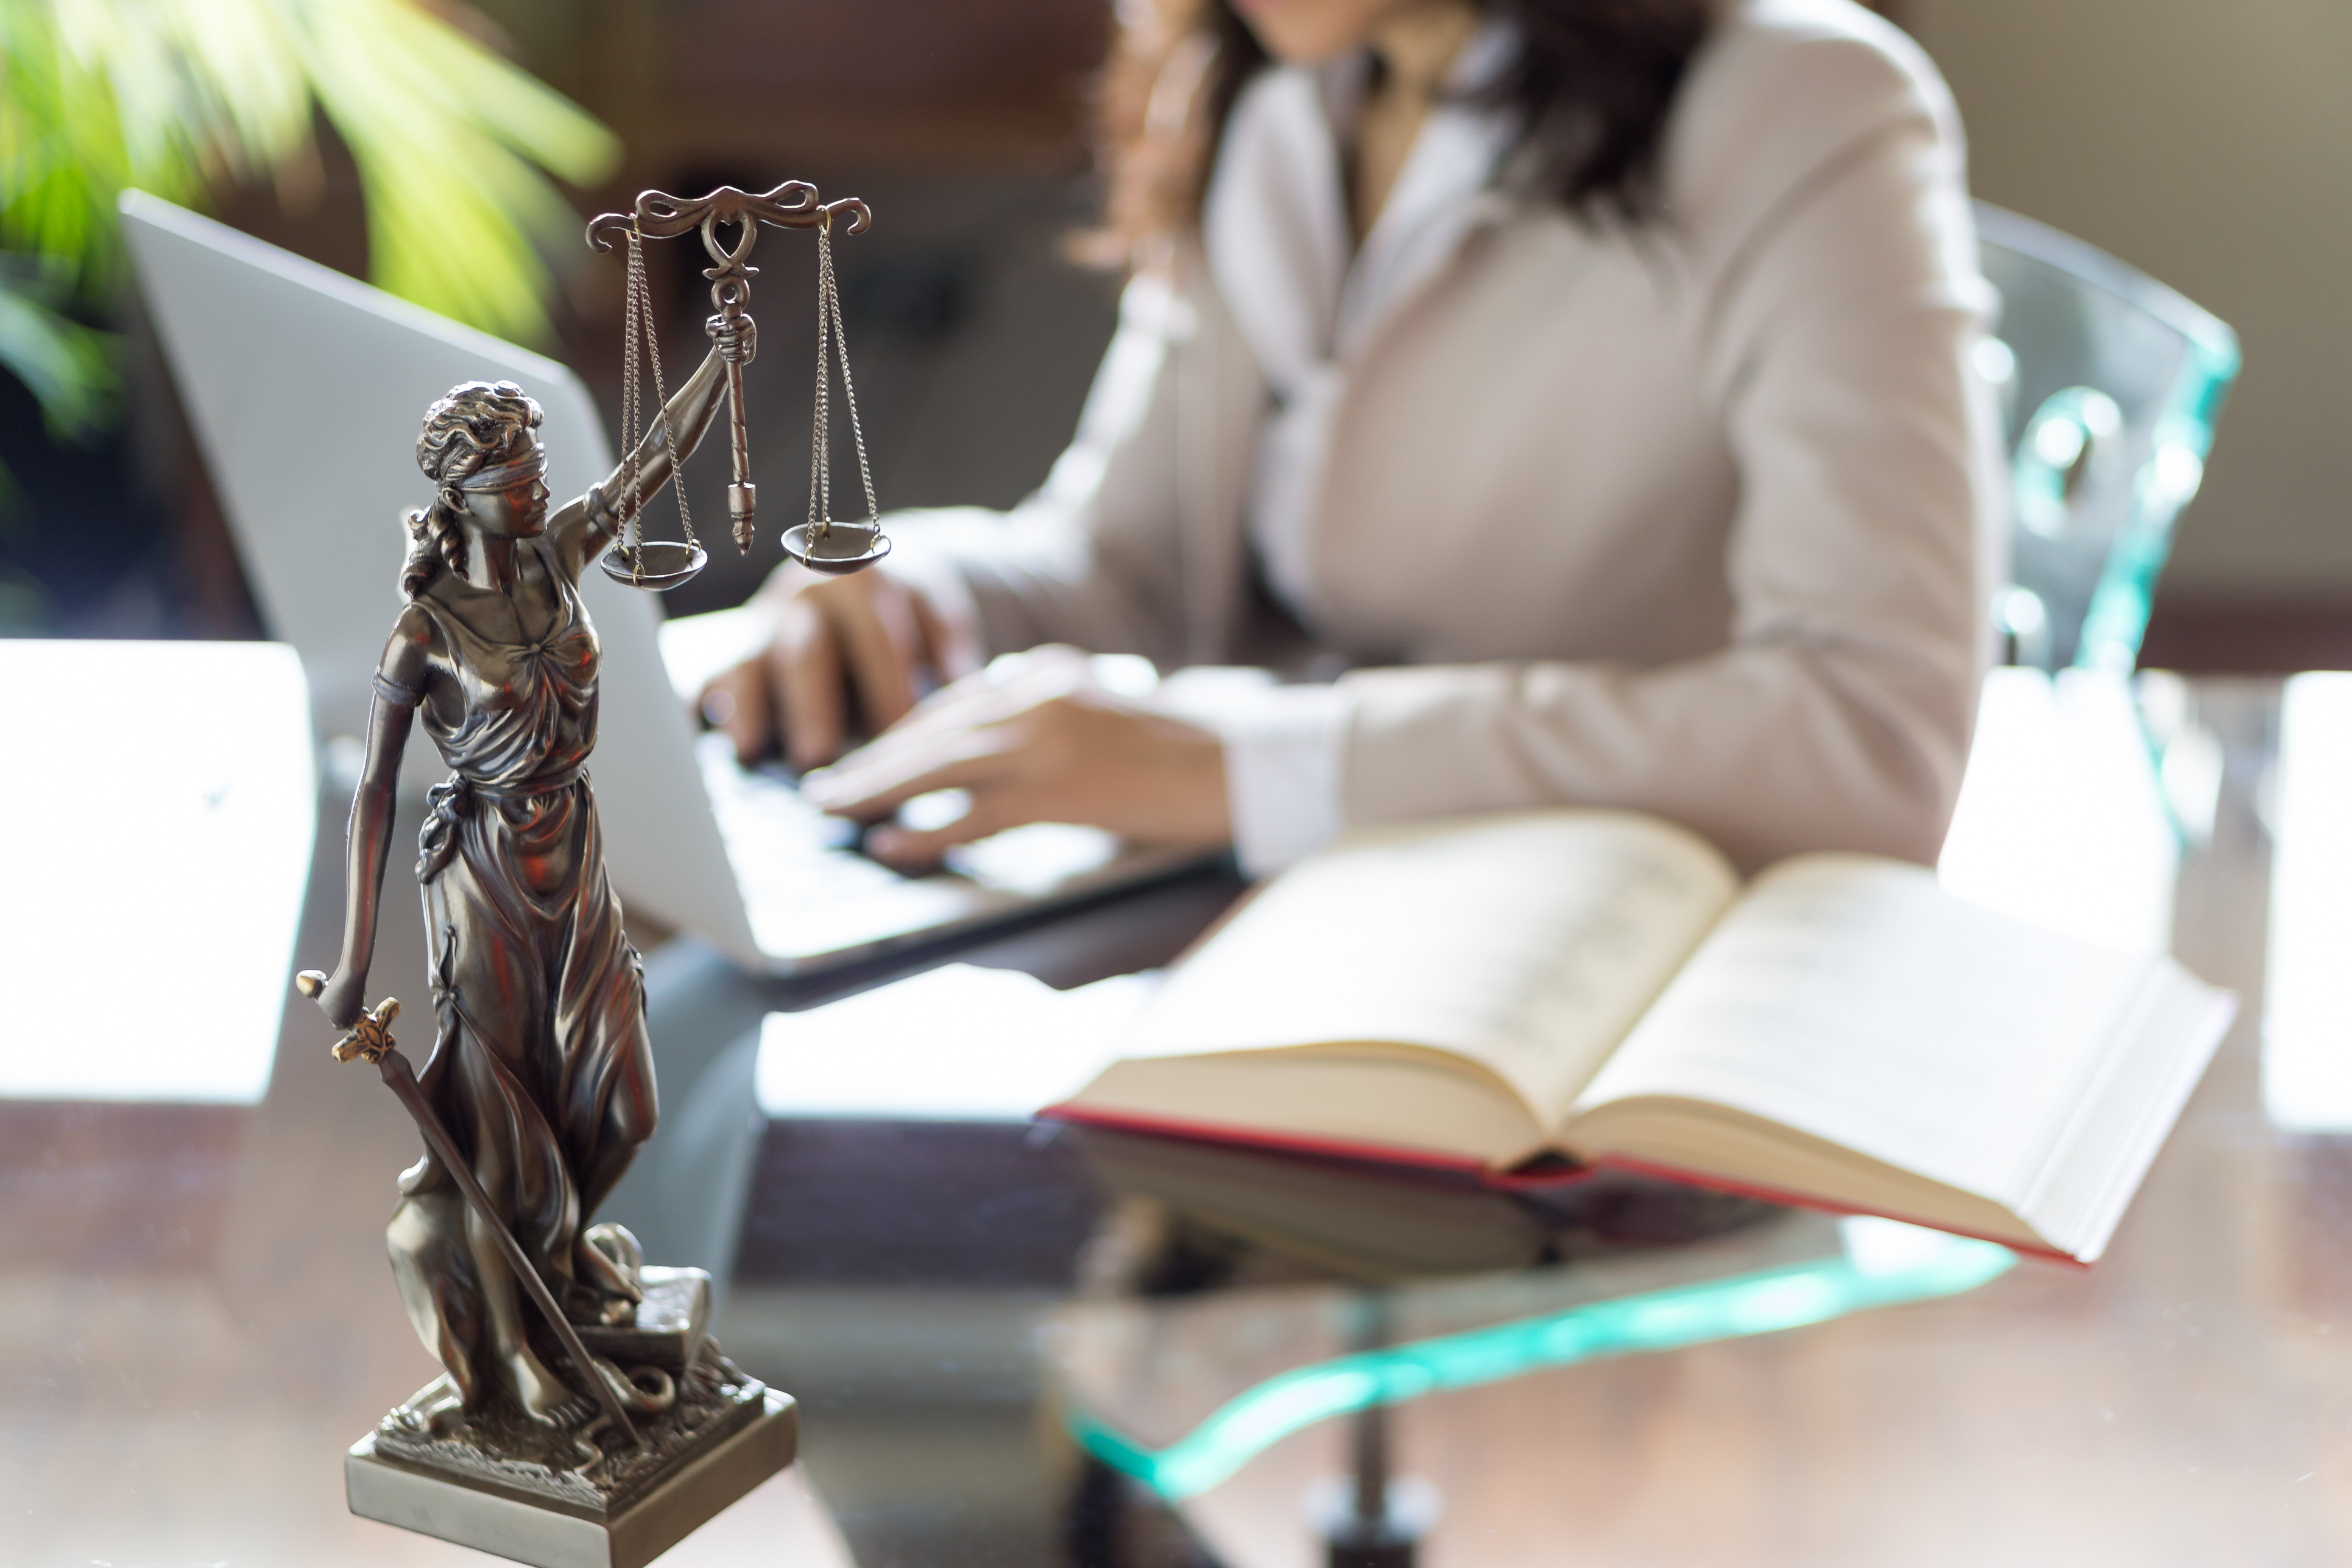 Imagem contendo estatueta da figura símbolo da justiça em cima de uma mesa com tampo de vidro. Ao fundo, à mesa, uma mulher utiliza um computador portátil.